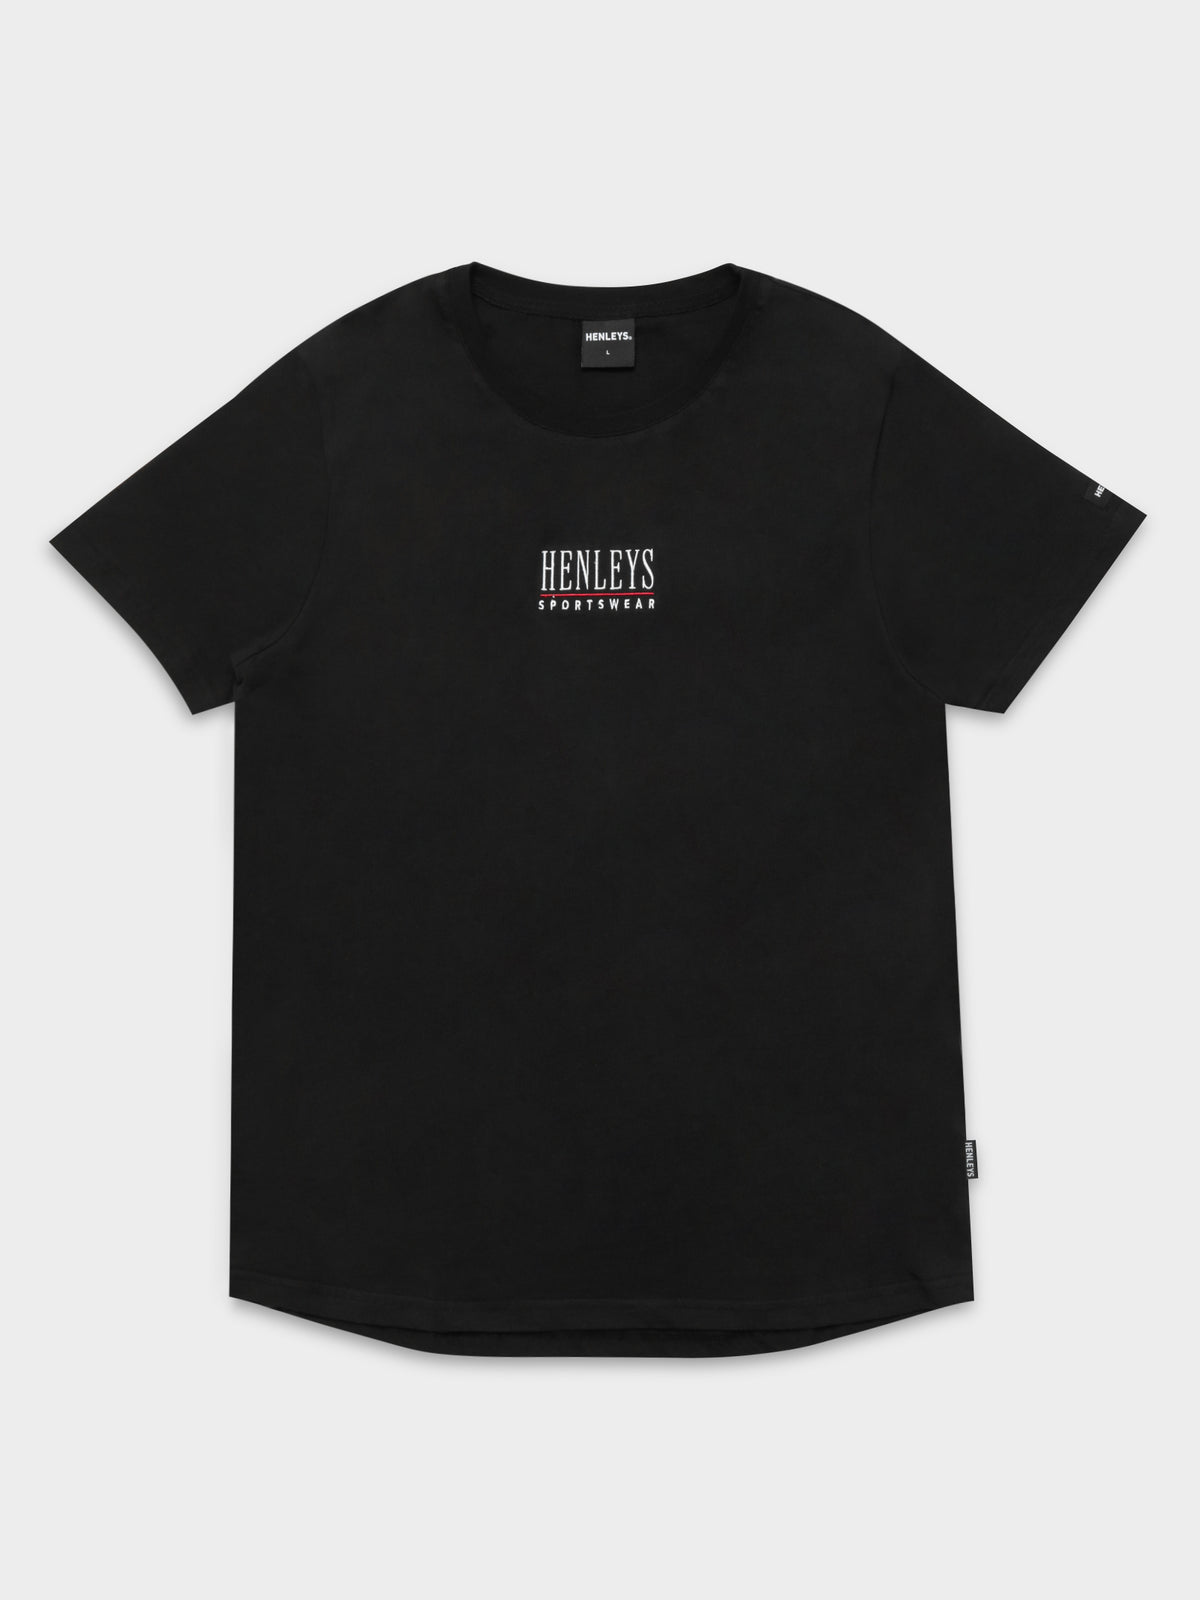 Slater T-Shirt in Black